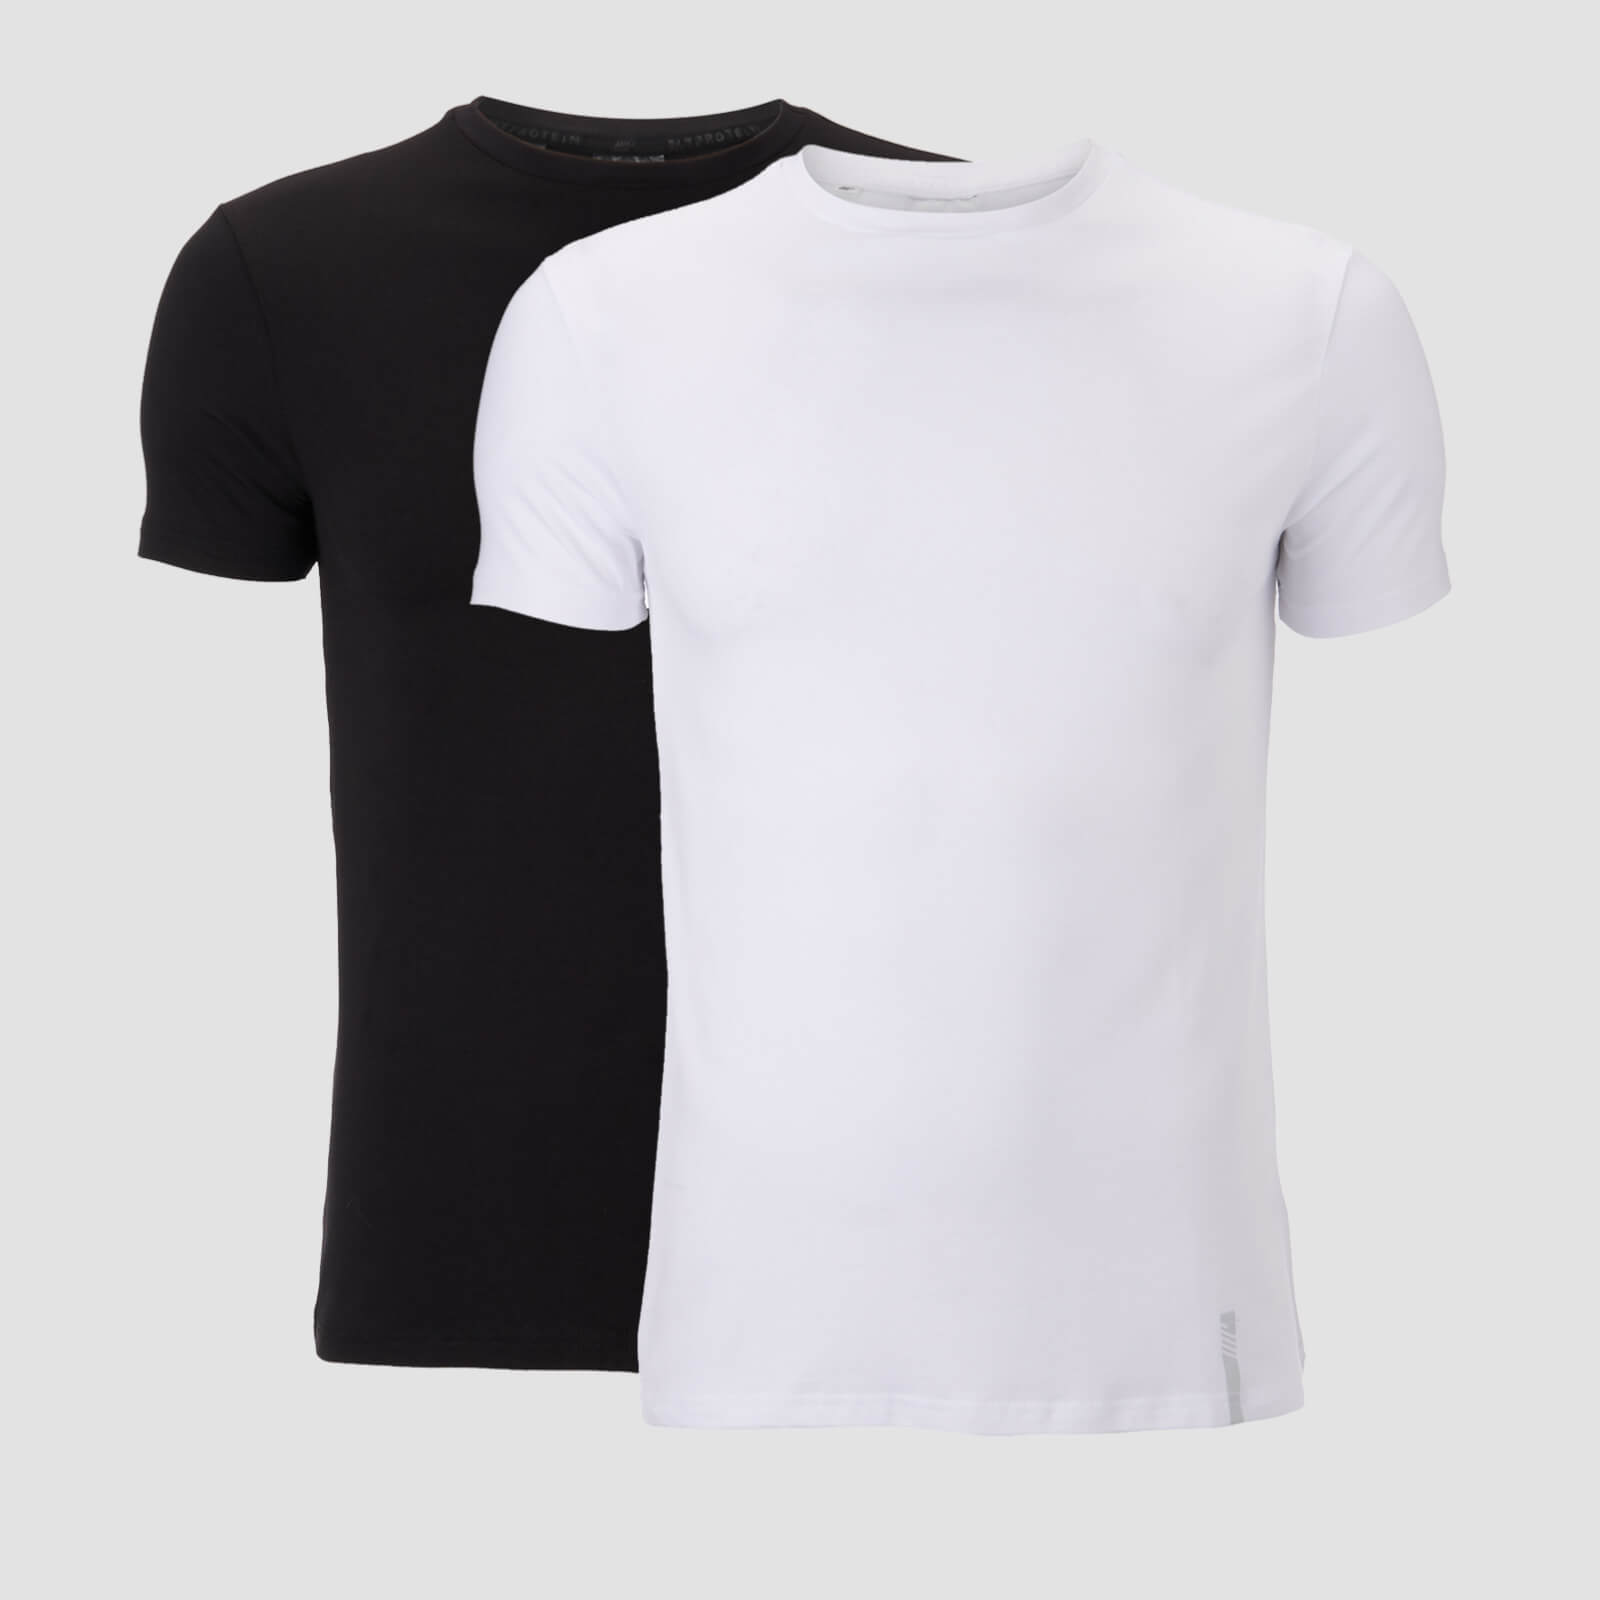 เสื้อยืดคอกลม Men's Luxe Classic Crew - Black/White (2 แพ็ค) - XS